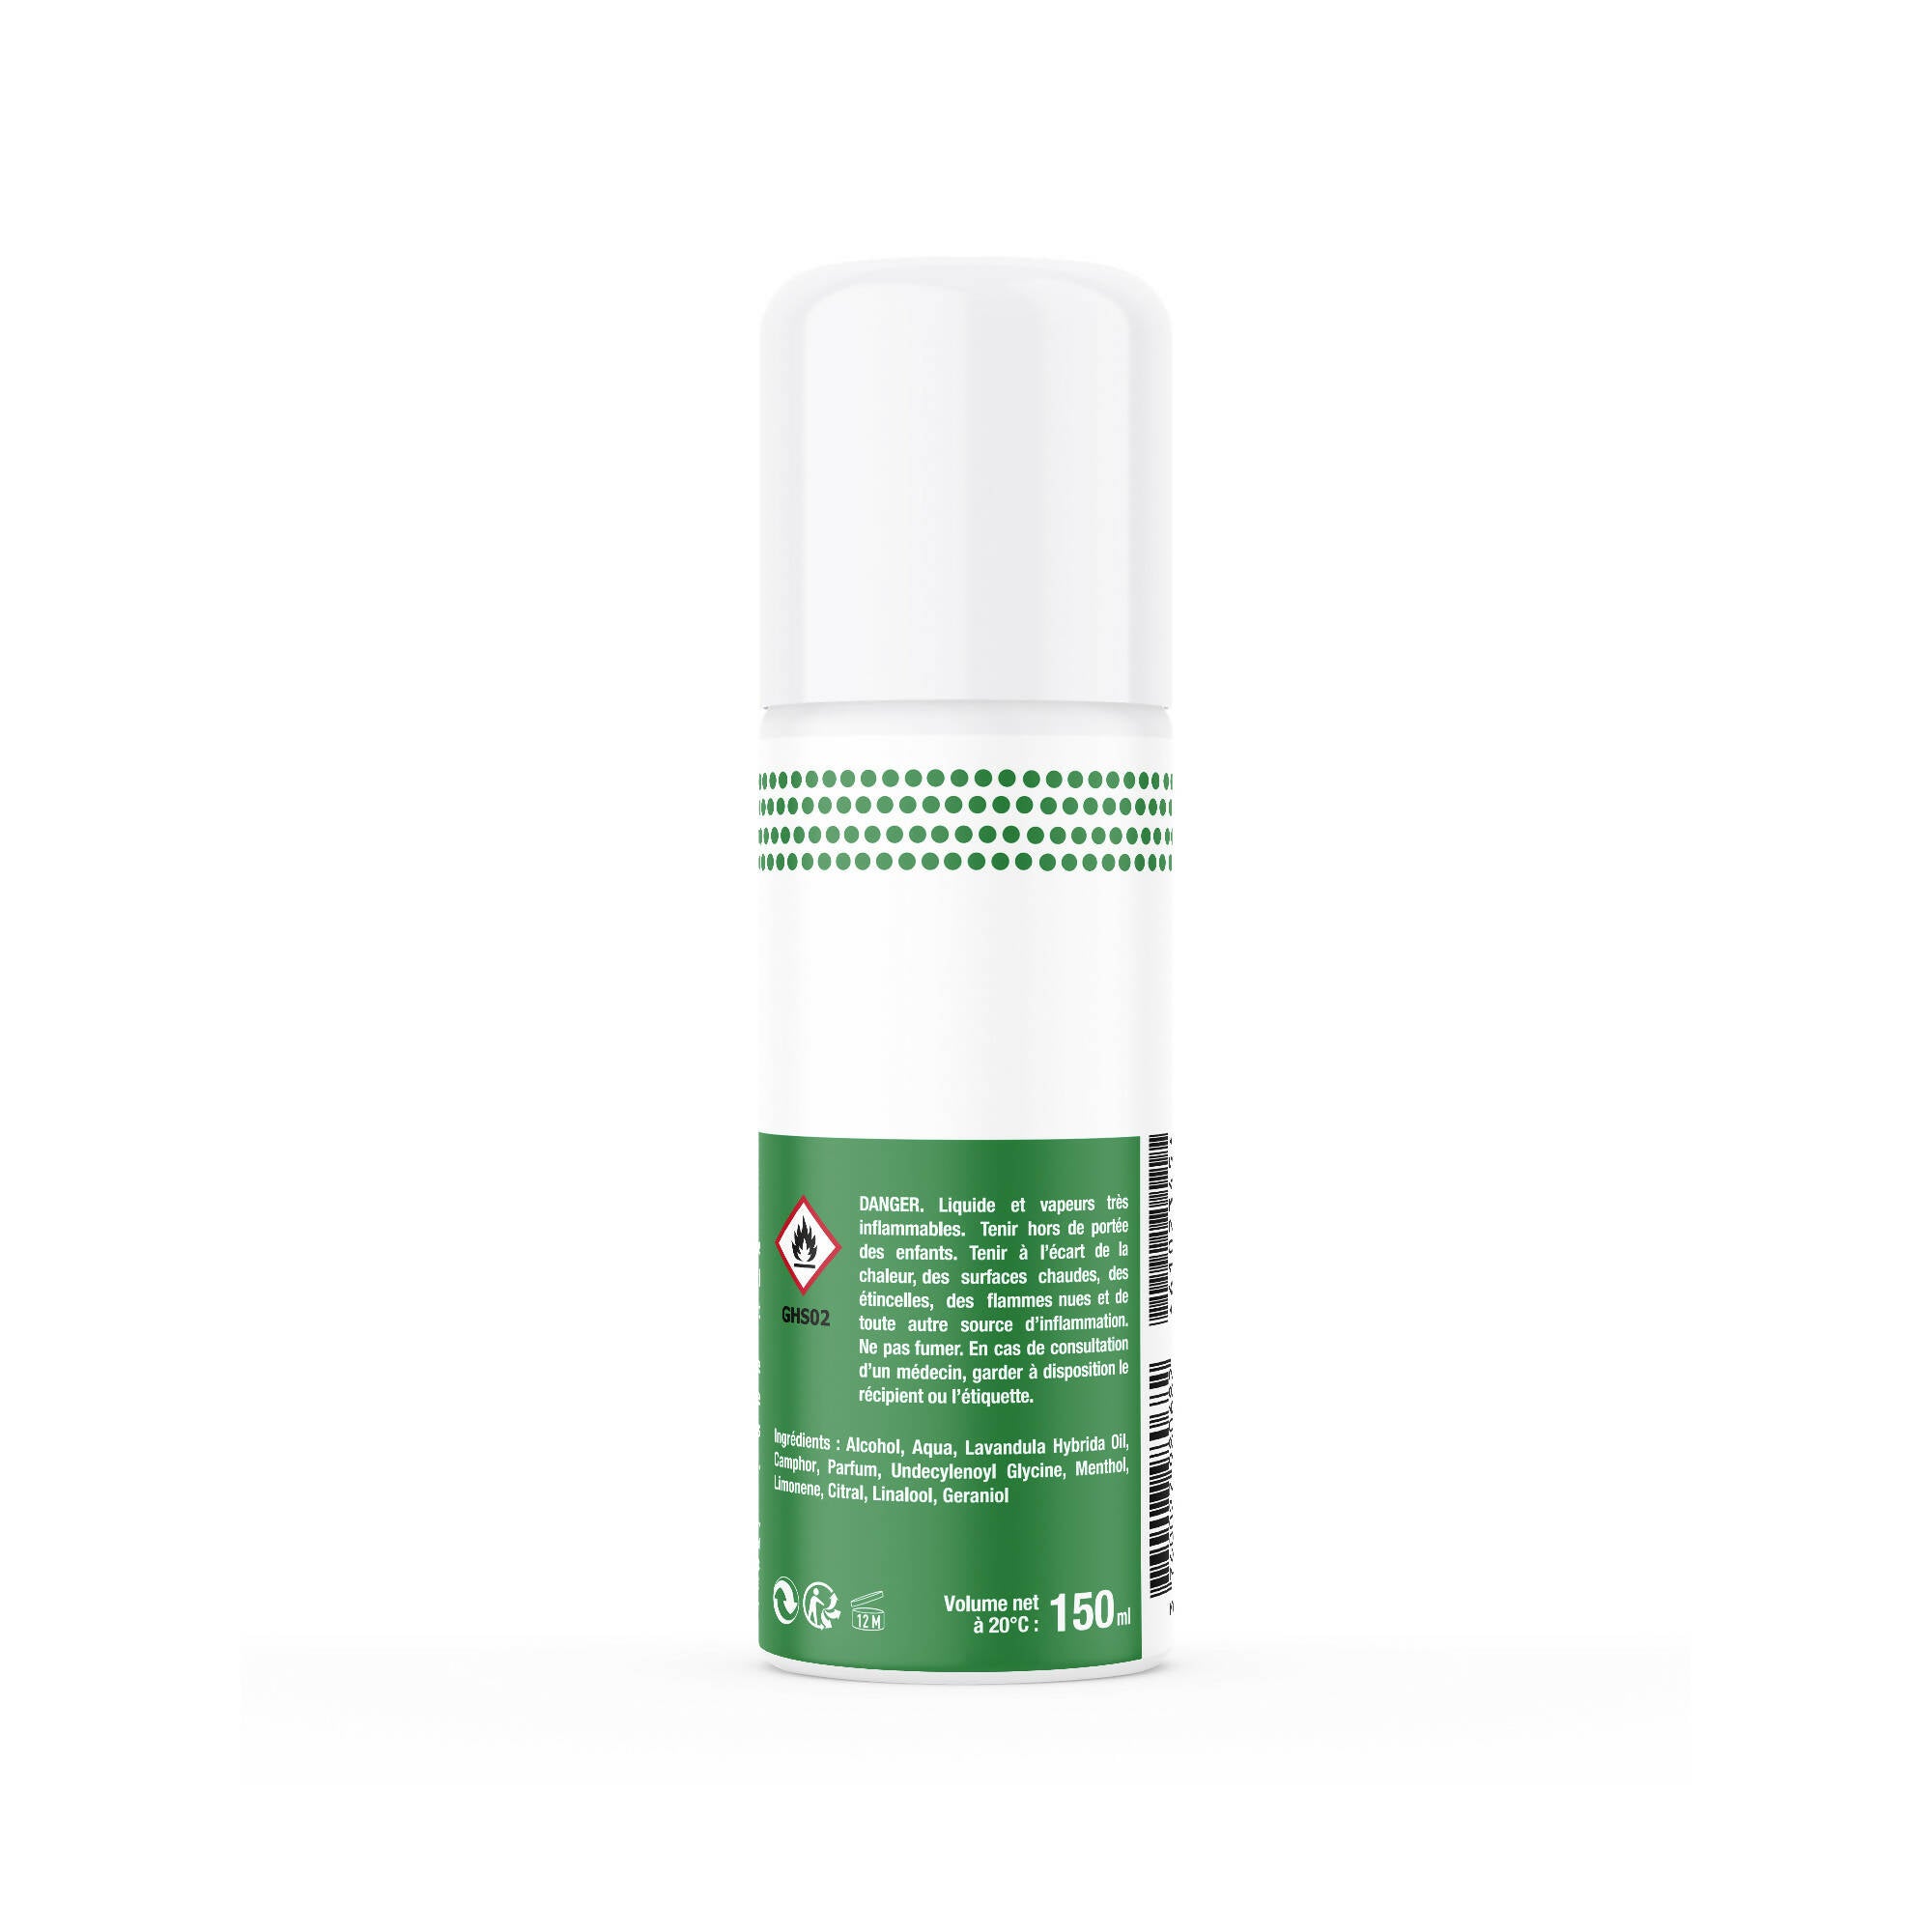 SORIFA – Komplette Box mit 12 Stück – Walker Spray – Fuß- und Schuhhygiene – 150 ml Spray ohne Gas